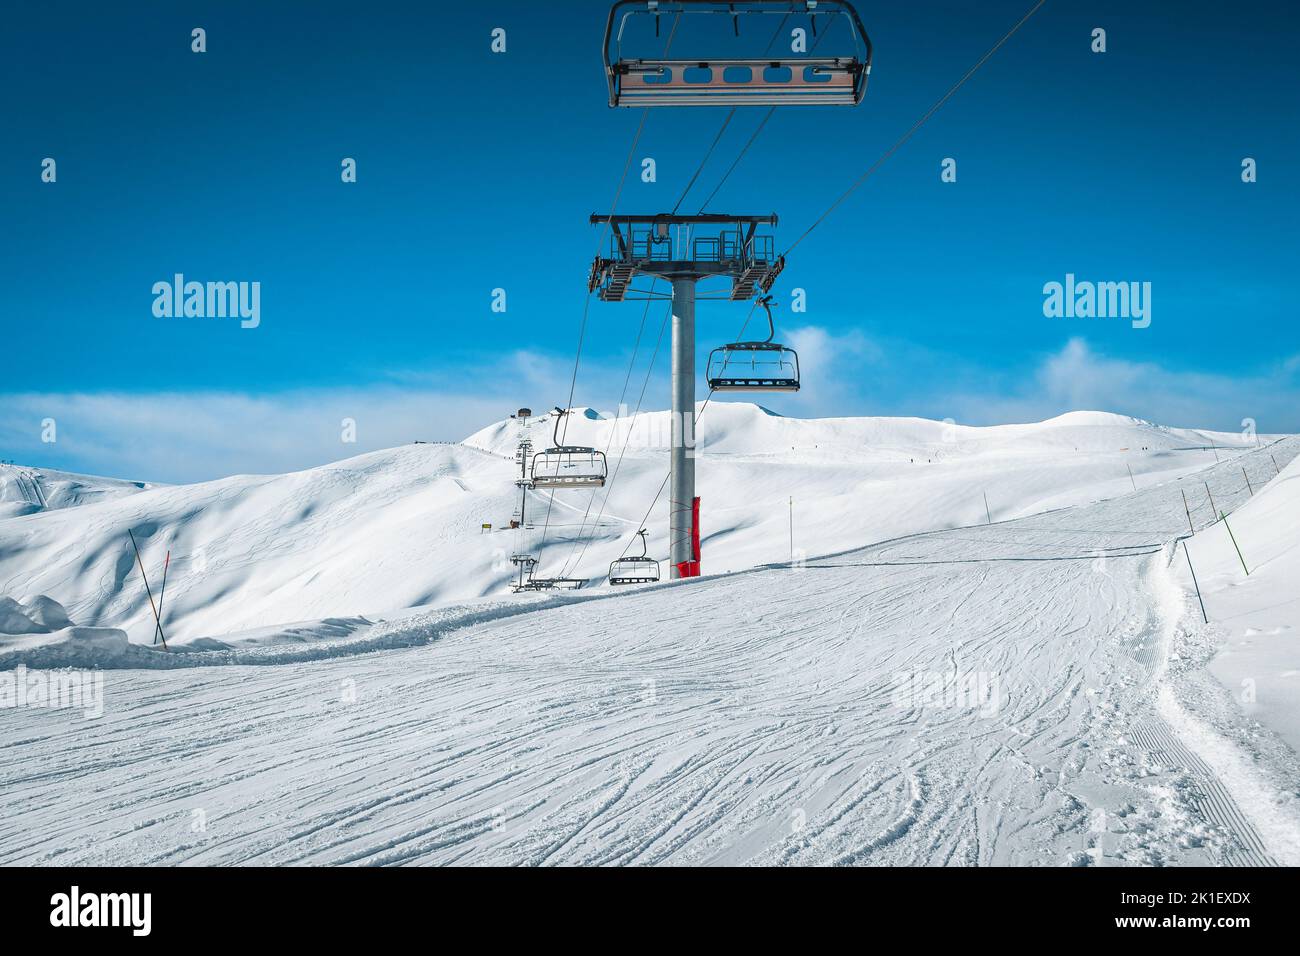 Bella stazione sciistica invernale con impianti di risalita vuoti e piste da sci, la Toussuire, Francia, Europa Foto Stock